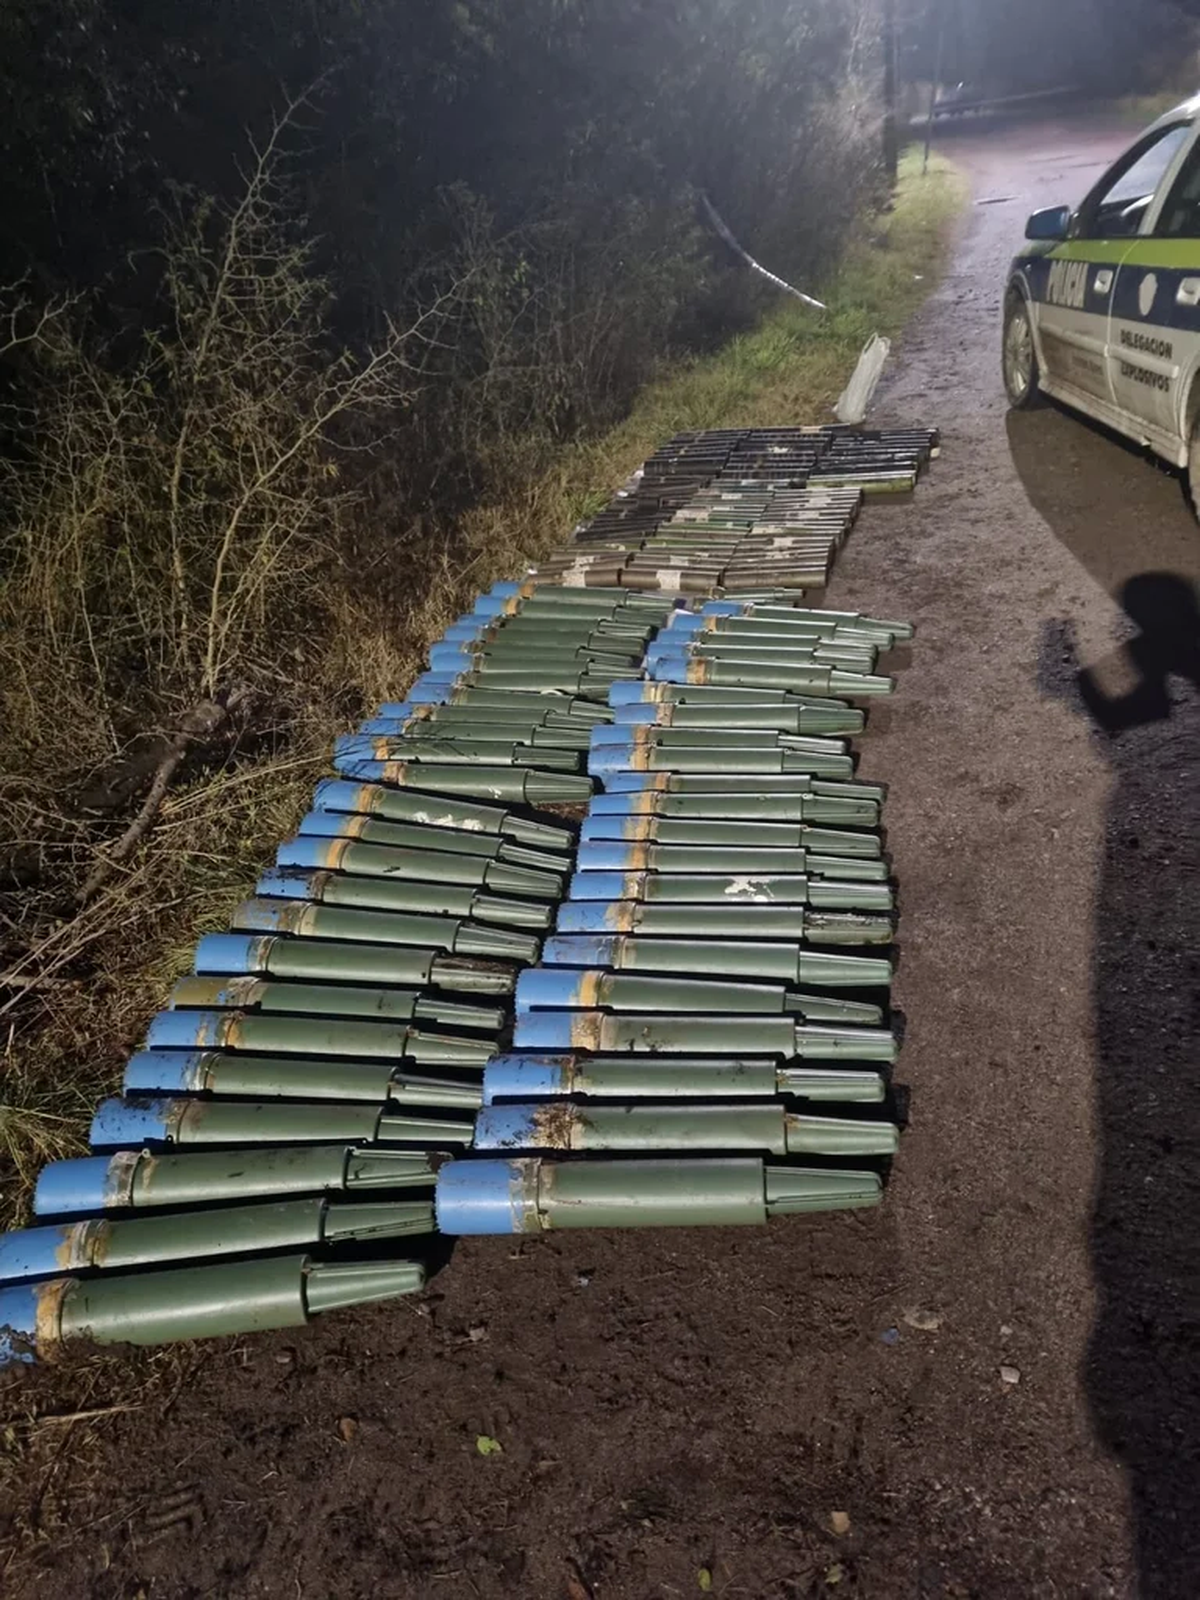 Explosivos en Ezeiza: qué se sabe del arsenal encontrado en el camping